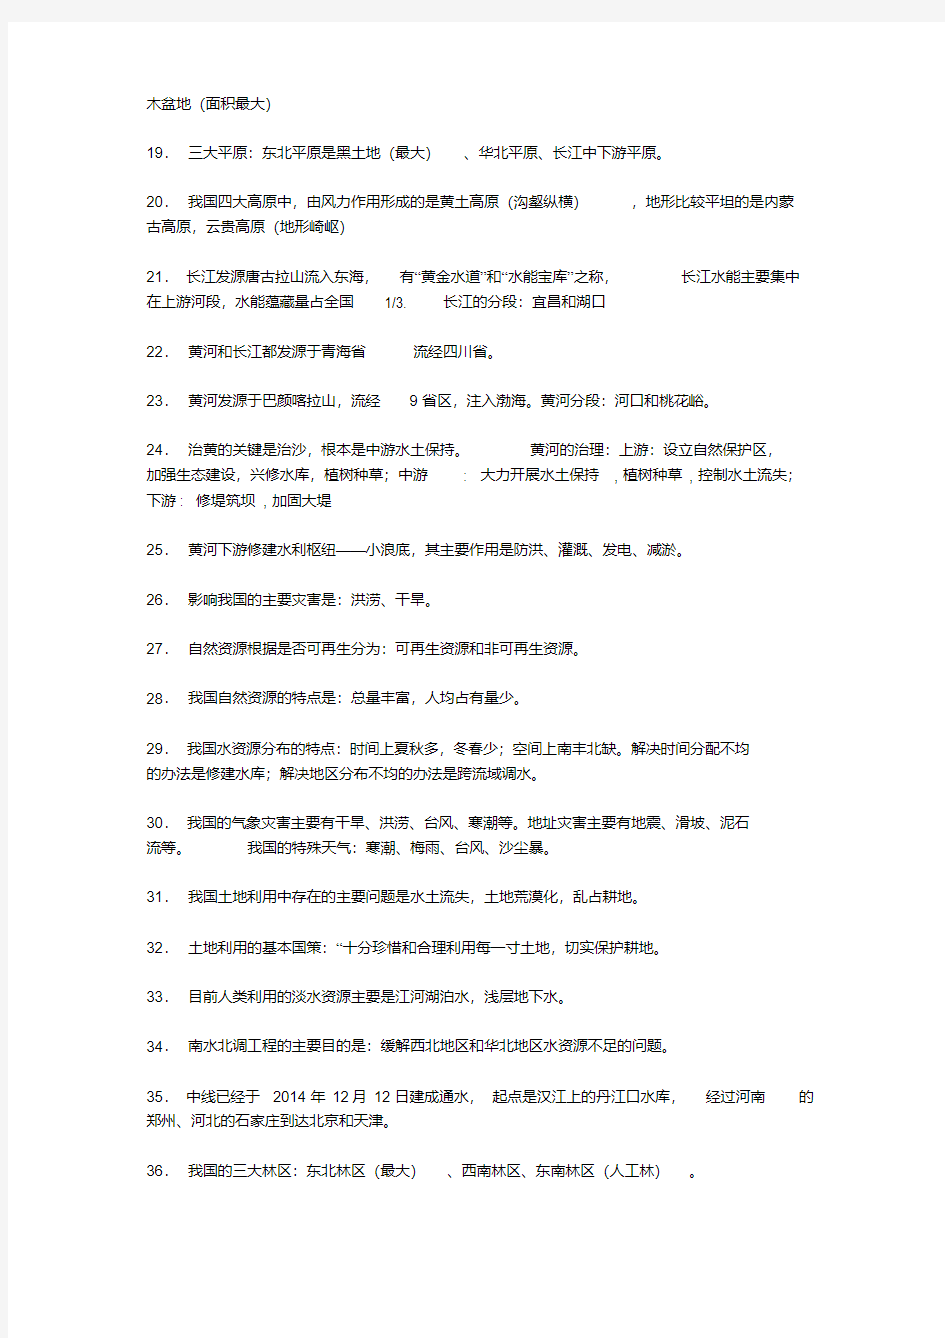 人教版九年级中国地理知识点归纳(20200804225834).pdf